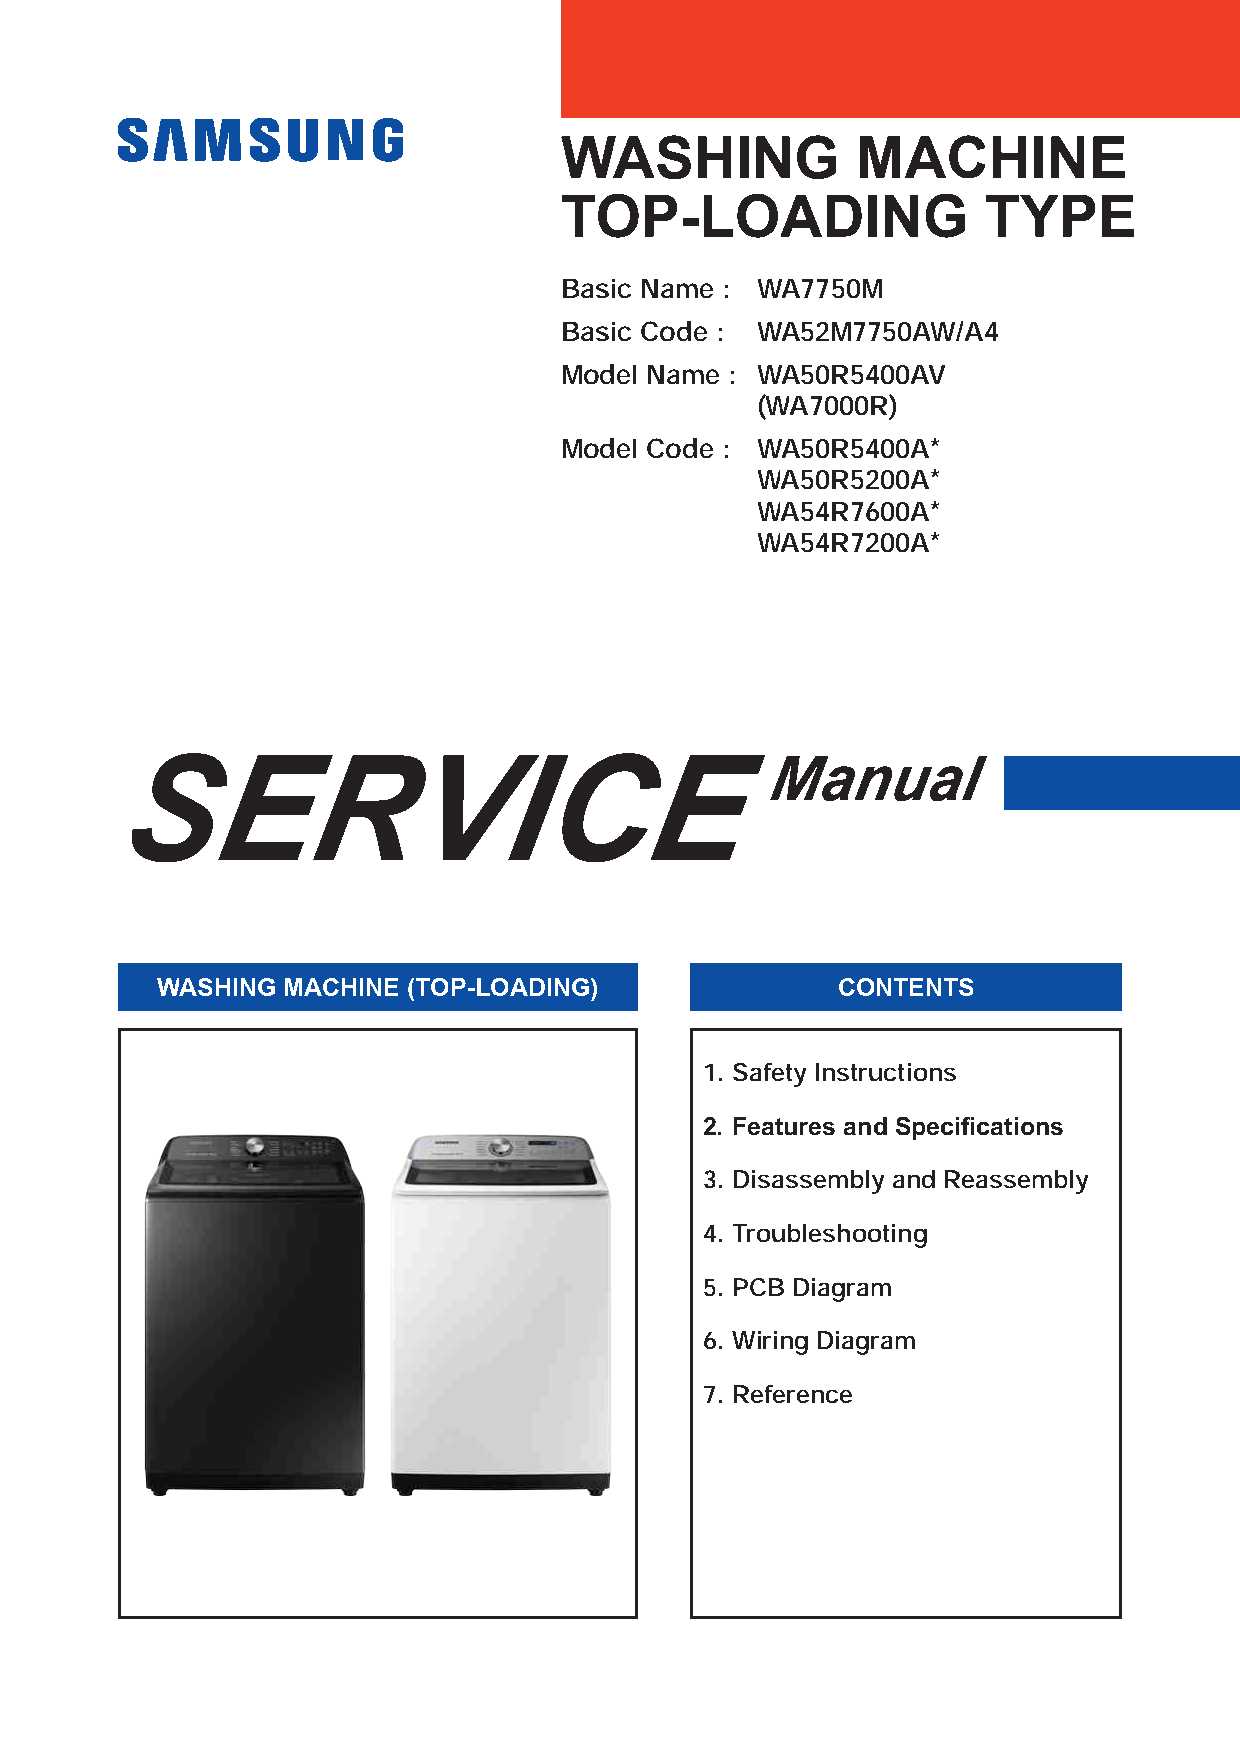 Samsung WA54R7600A Service Manual